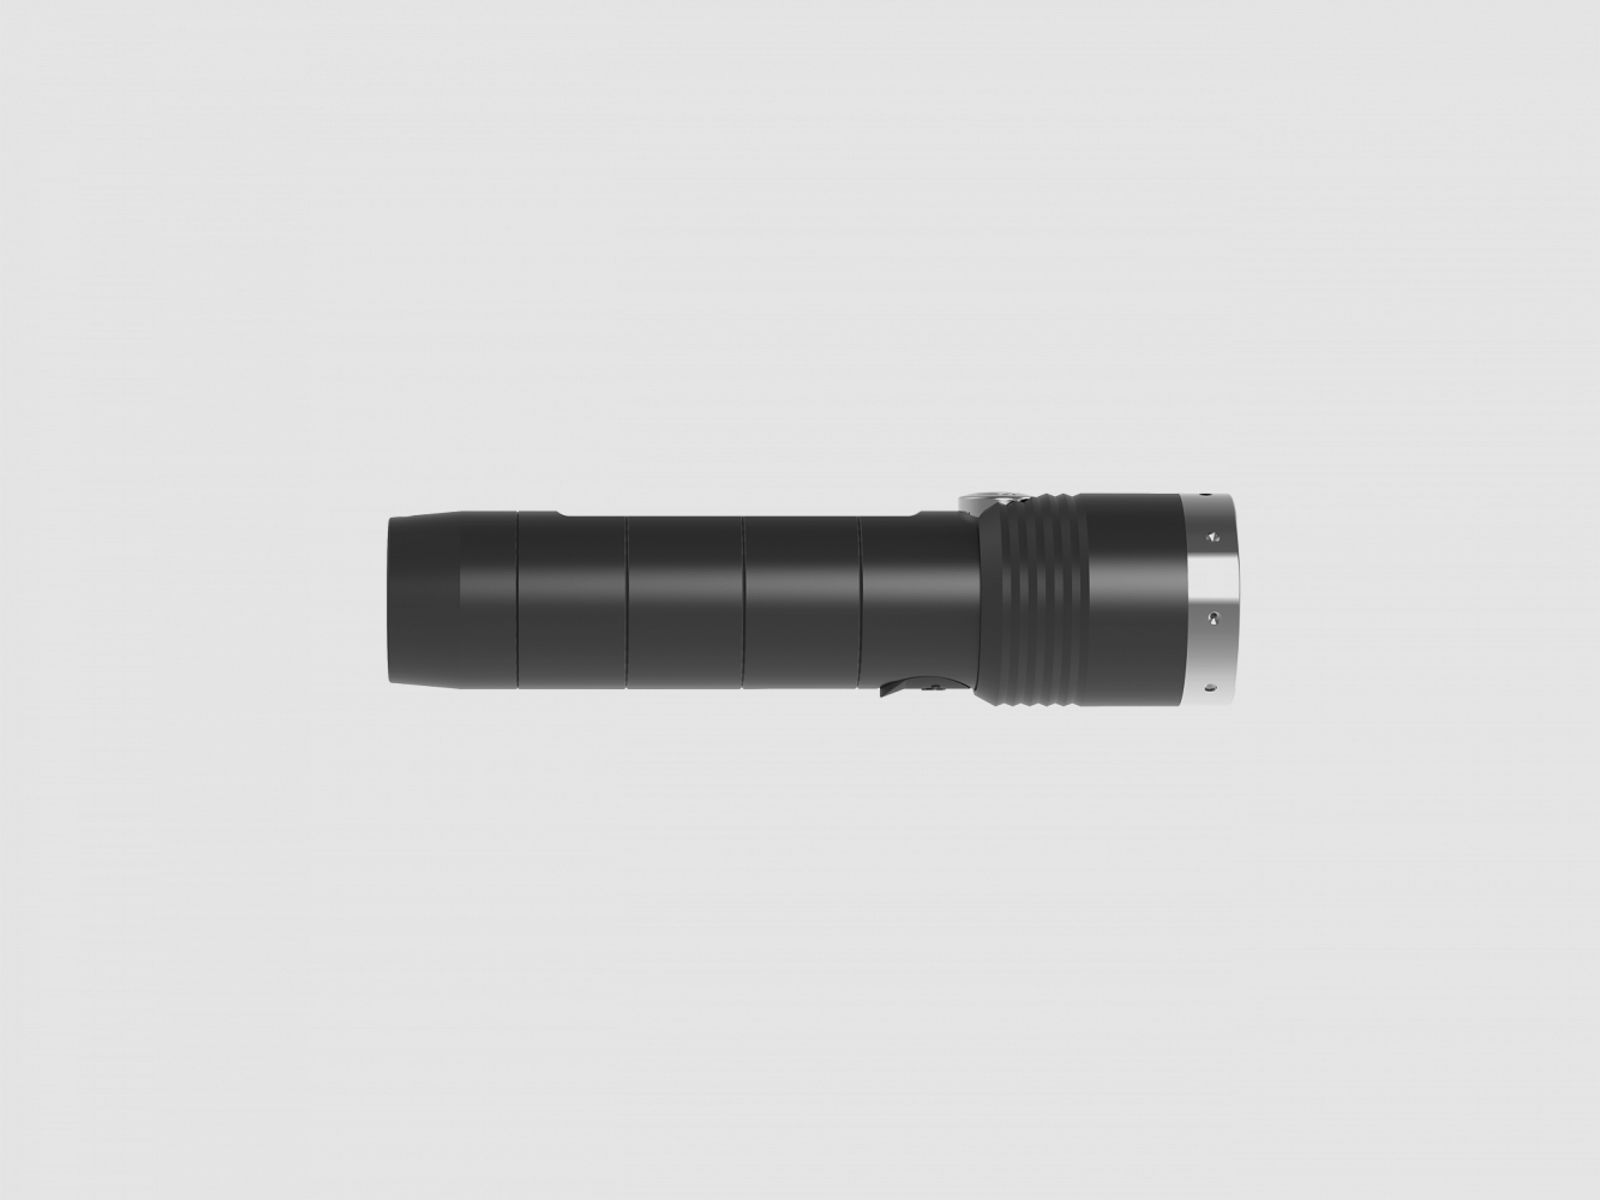 Led Lenser MT10 Stablampe, wiederaufladbar